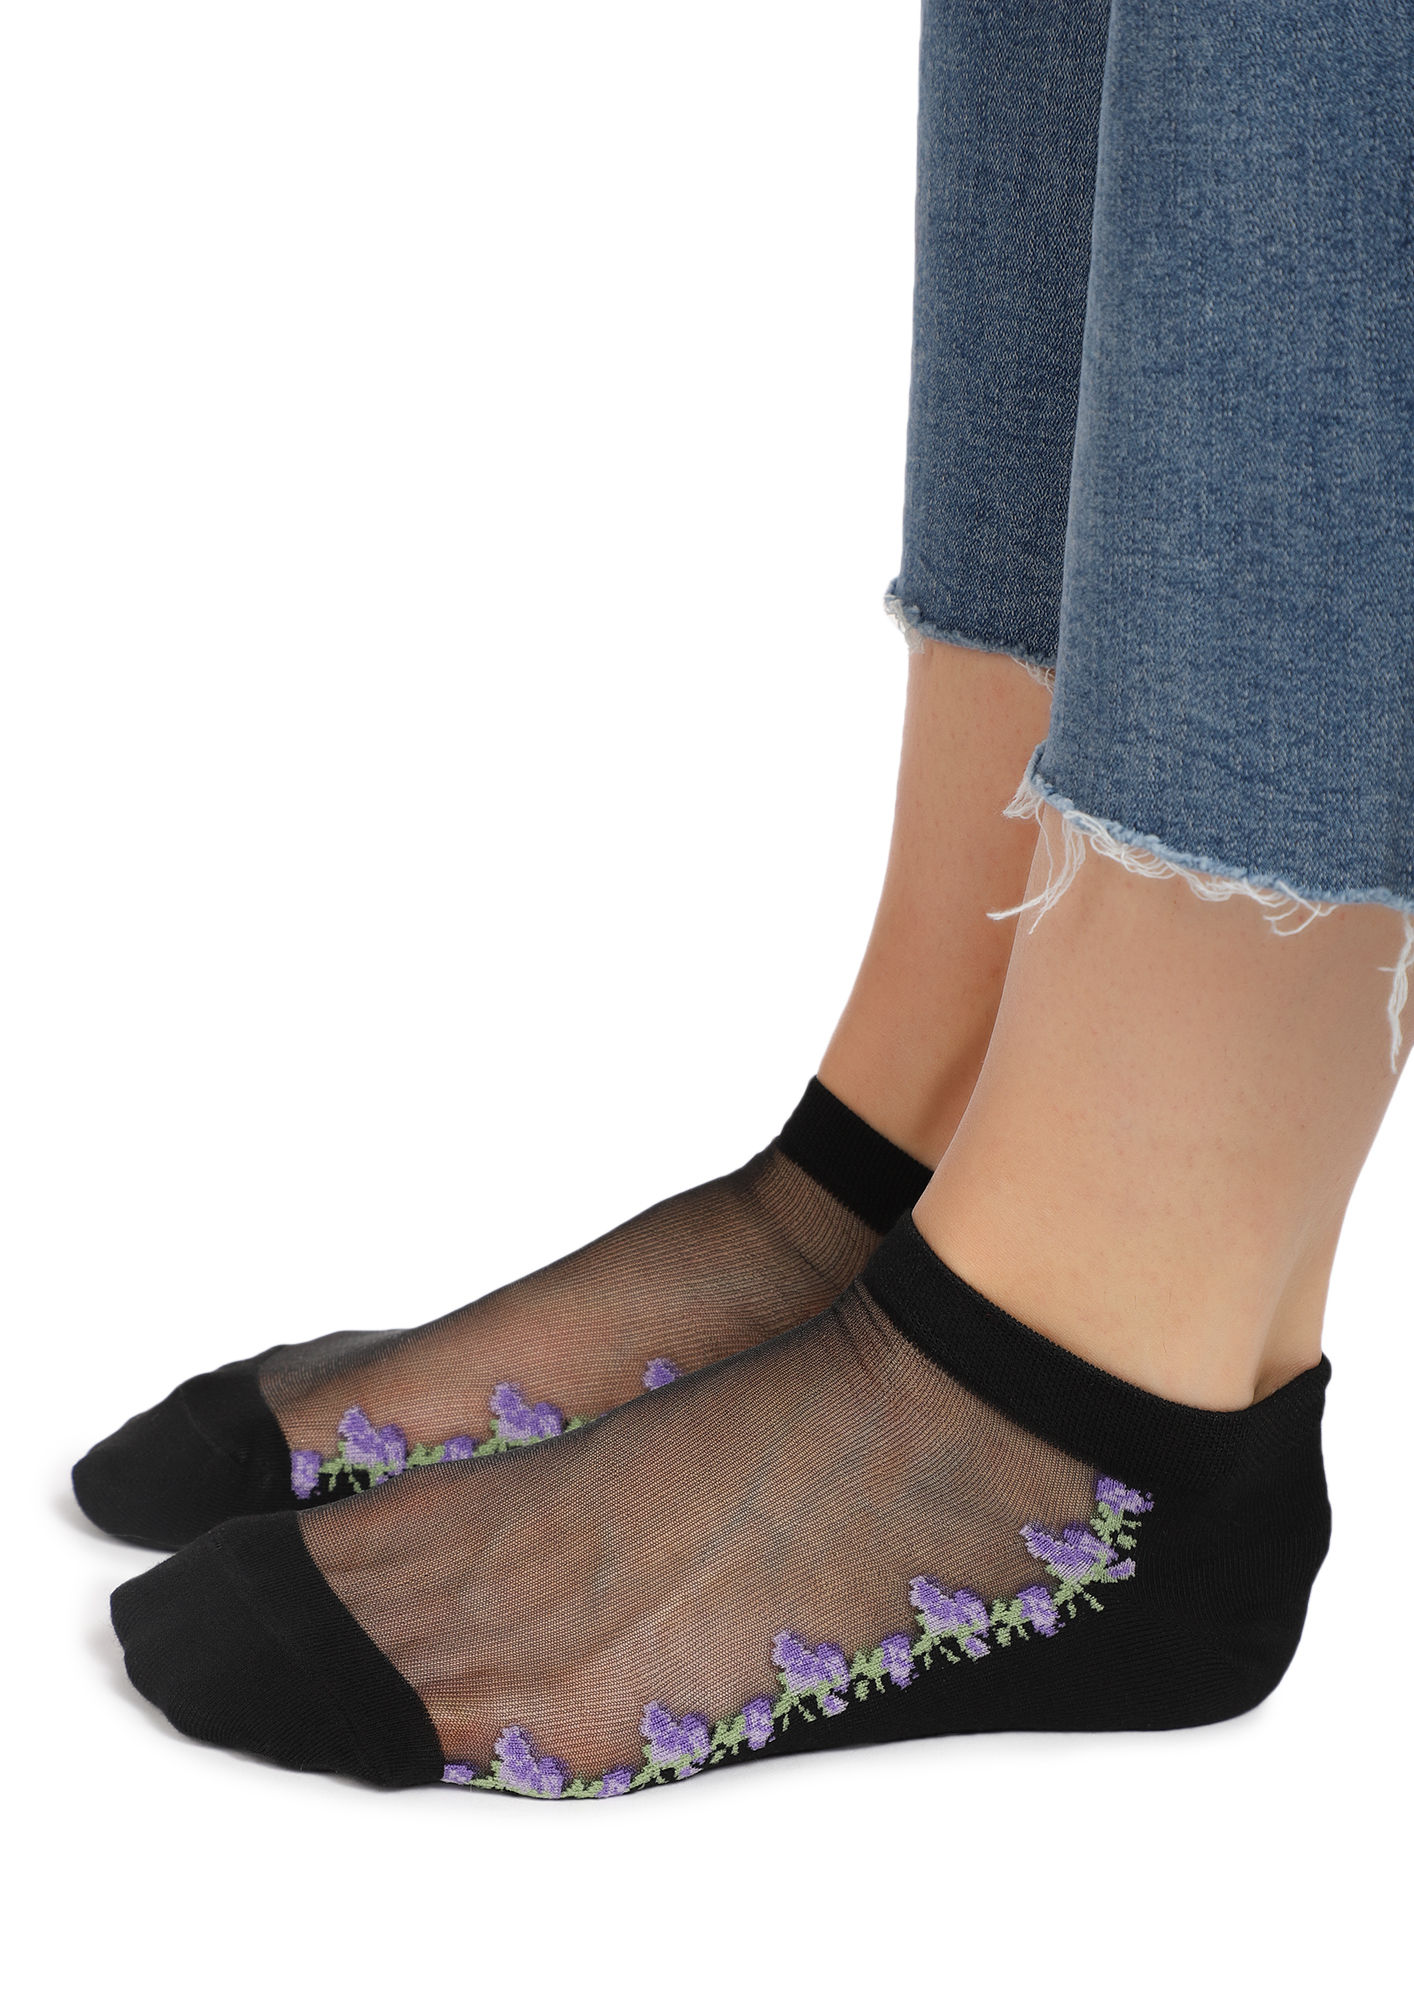 3 pair Women's Transparent Thin Flower Lace Socks Mesh Short Ankle Socks  Summer